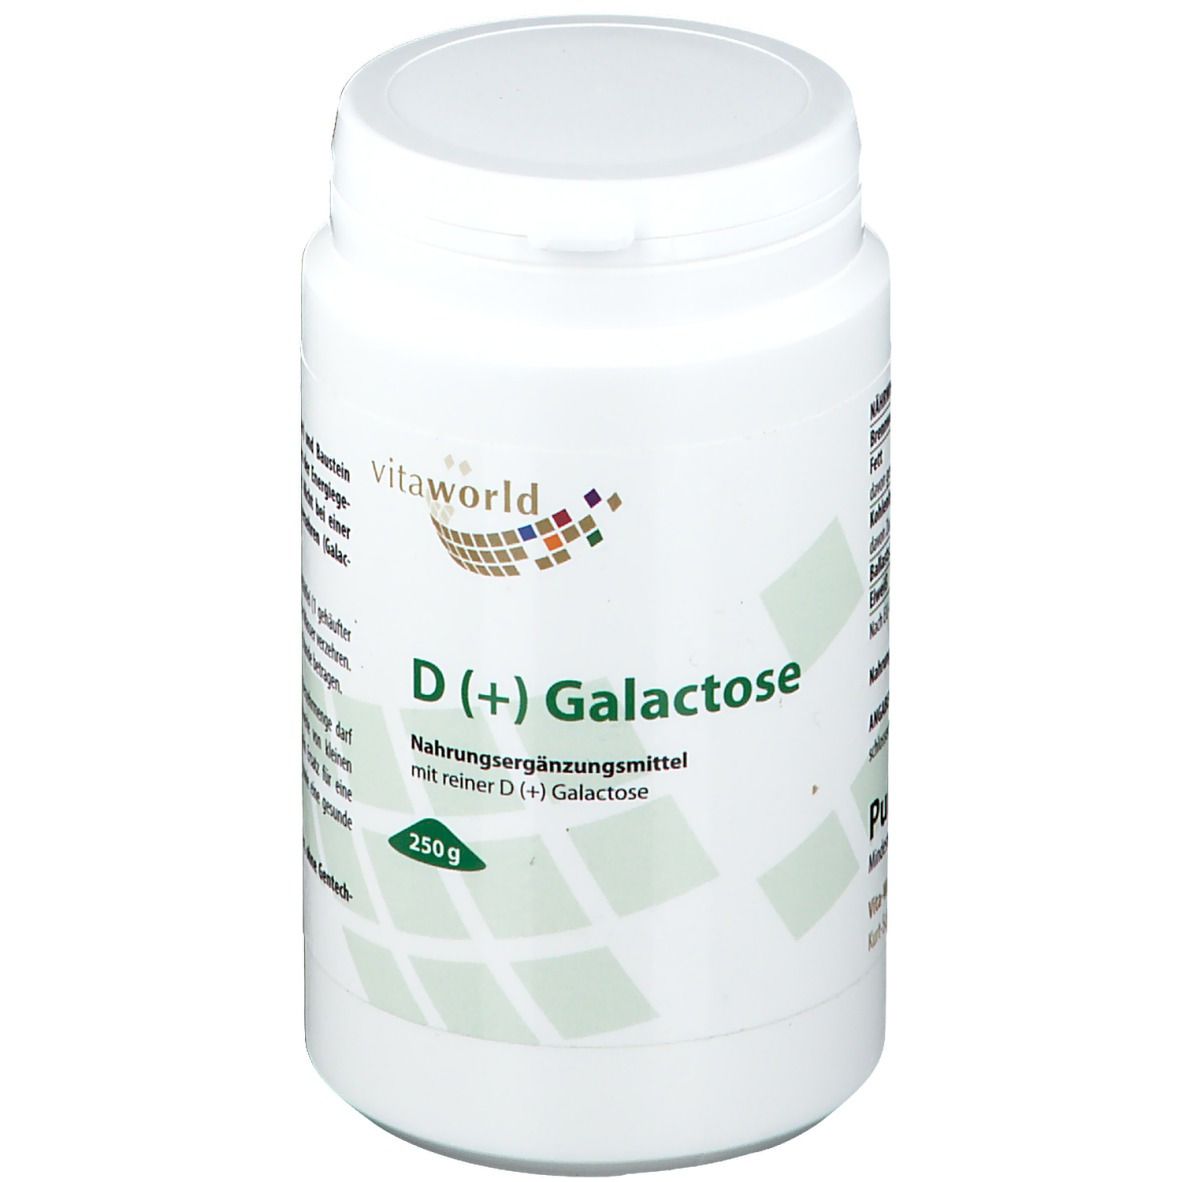 D (+) Galactose